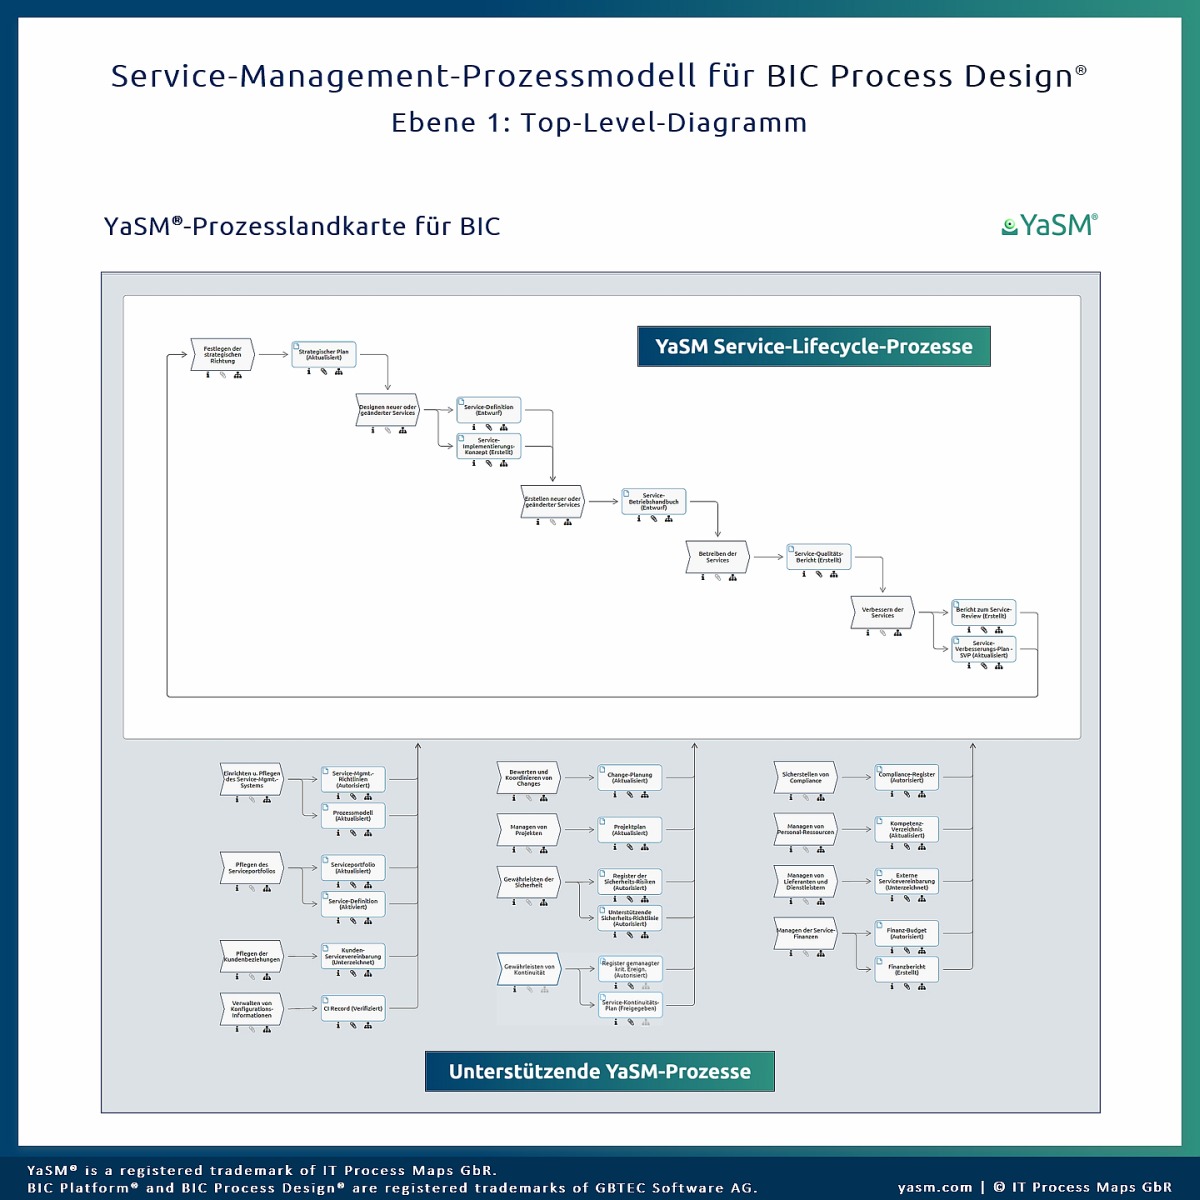 Das Top-Level-Diagramm der YaSM-Prozesslandkarte für BIC (BIC Process Design) mit einem Überblick über alle Service-Management-Prozesse.